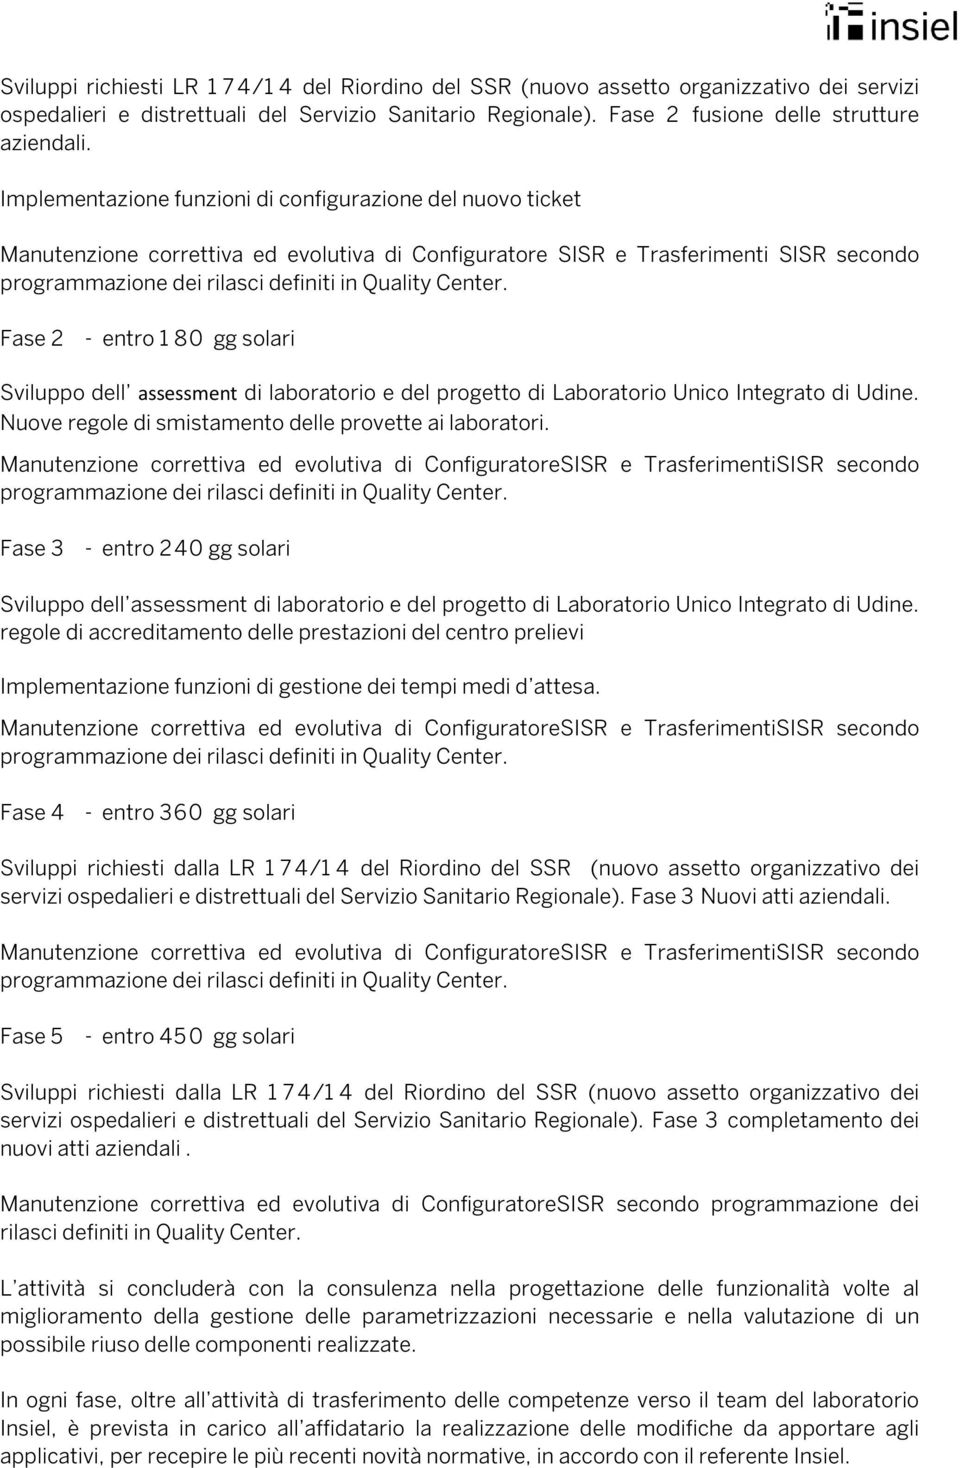 assessment di laboratorio e del progetto di Laboratorio Unico Integrato di Udine. Nuove regole di smistamento delle provette ai laboratori.